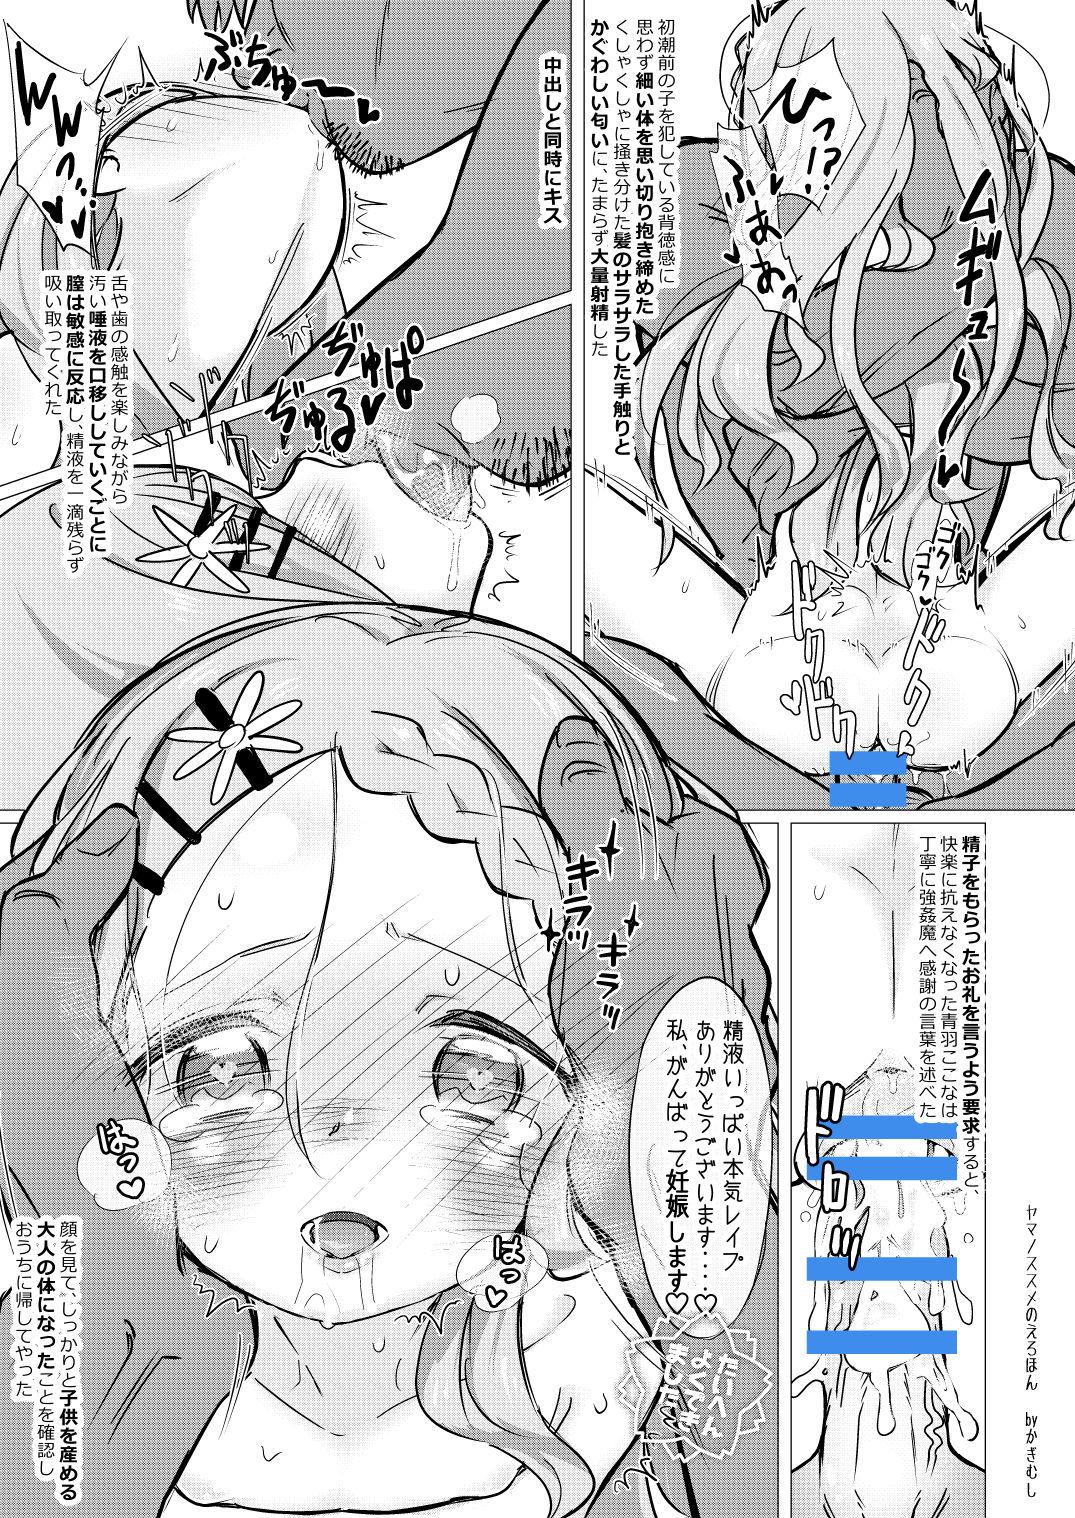 Girl Yama no Susume no Erohon - Yama no susume Shaven - Page 10